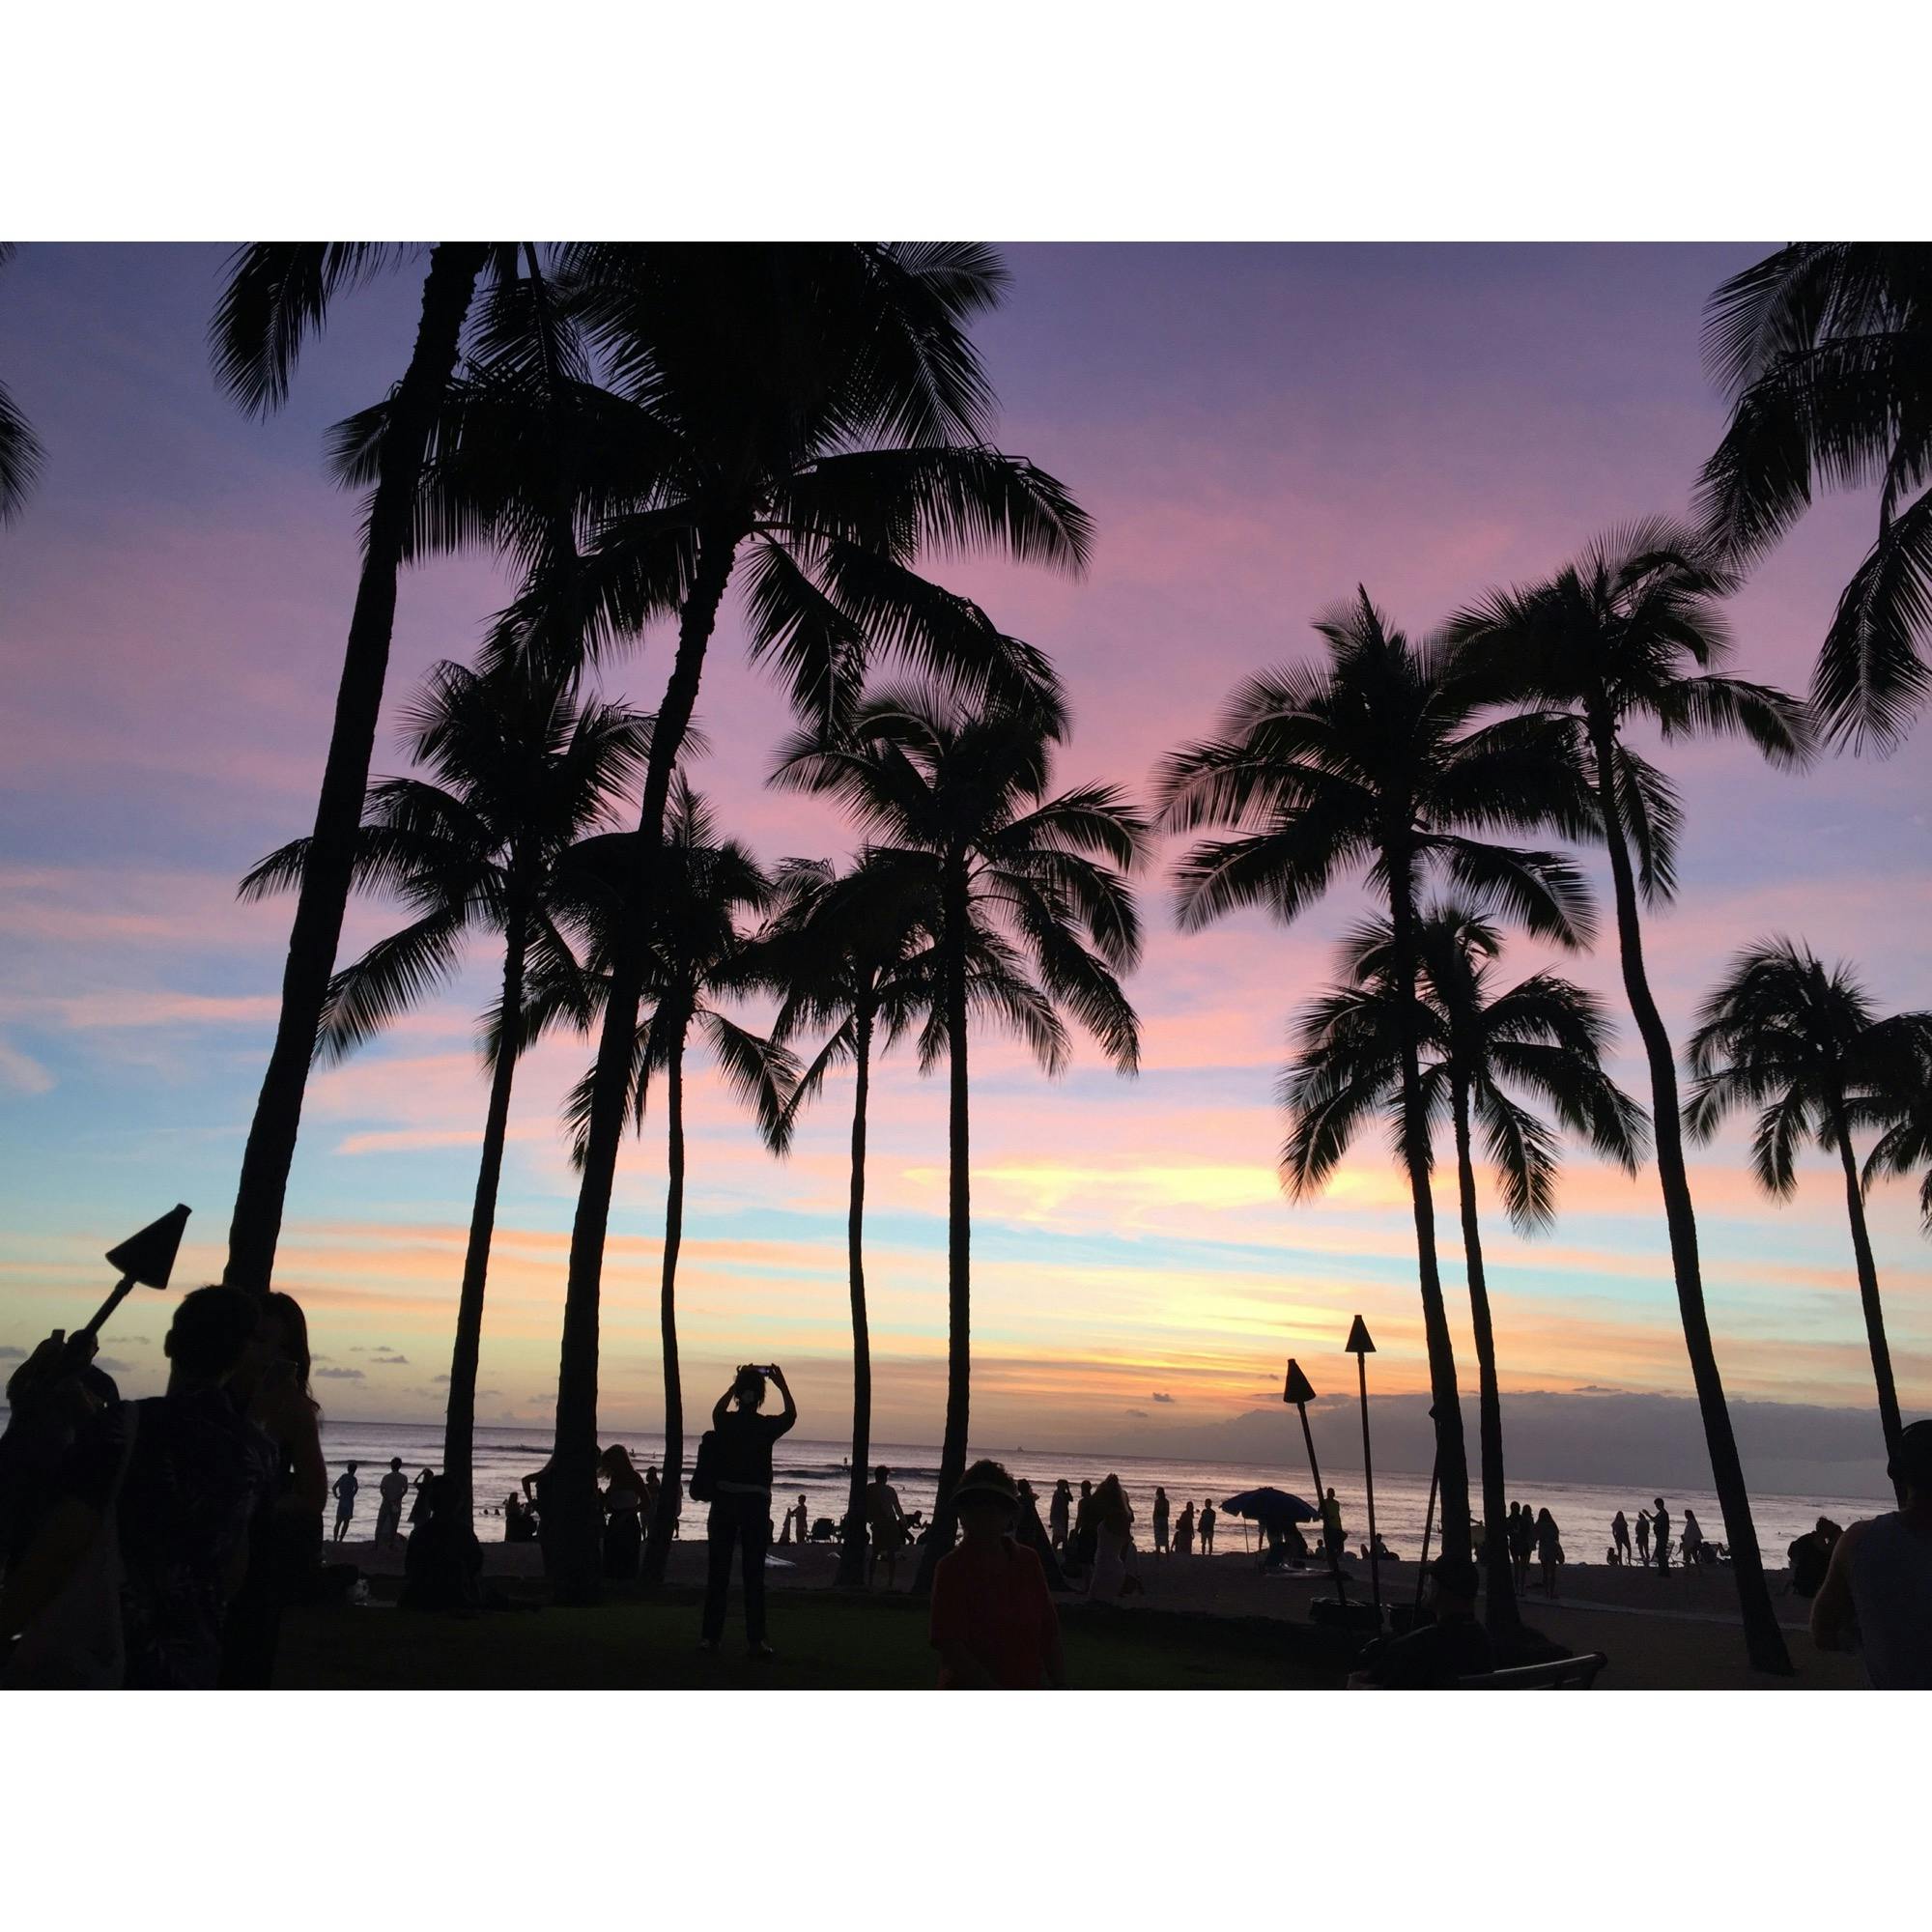 ワイキキ ビーチ Waikiki Beach の投稿写真 感想 みどころ 18 11 13ハワイ 夕方のビーチ トリップノート